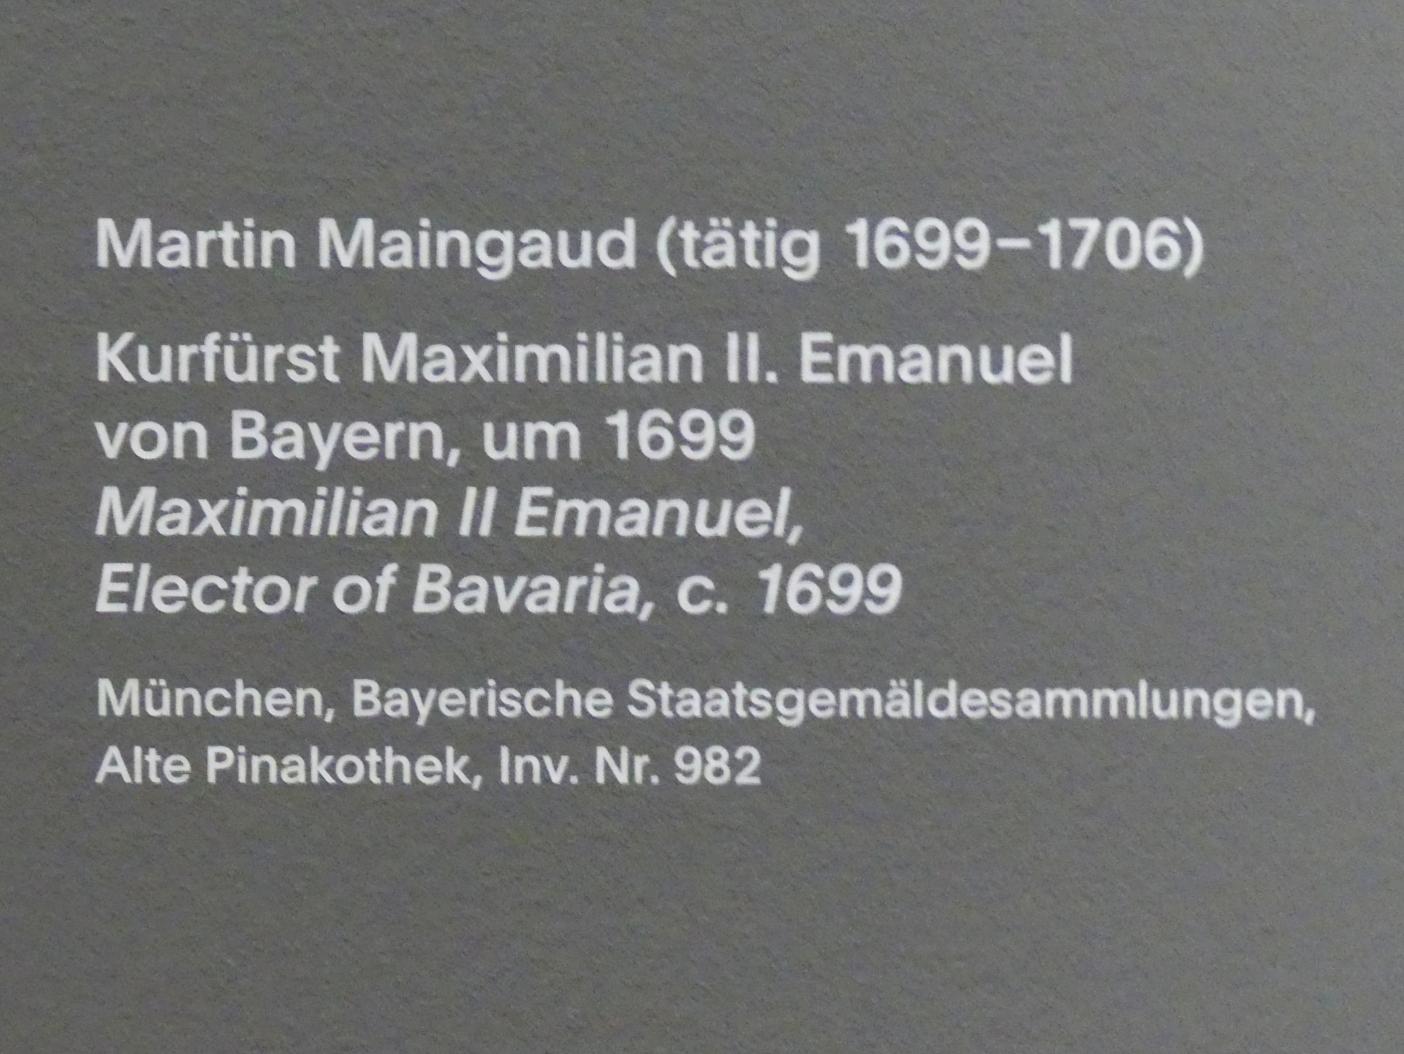 Martin Maingaud (1699), Kurfürst Maximilian II. Emanuel von Bayern, München, Alte Pinakothek, Ausstellung "Van Dyck" vom 25.10.2019-02.02.2020, Eingang, um 1699, Bild 2/2